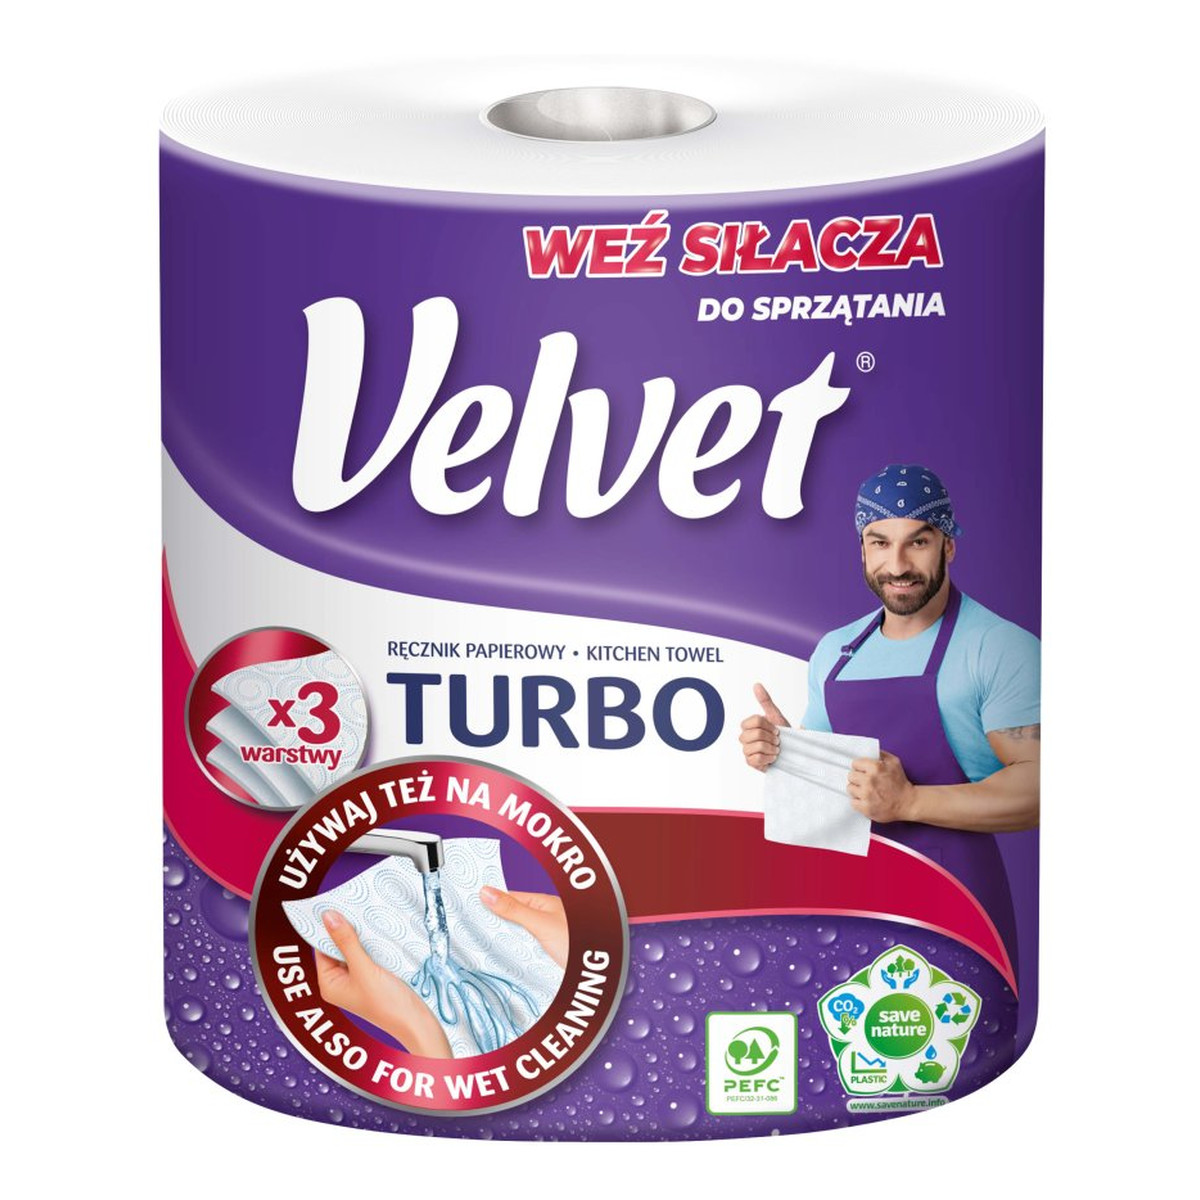 Velvet Turbo ręcznik papierowy